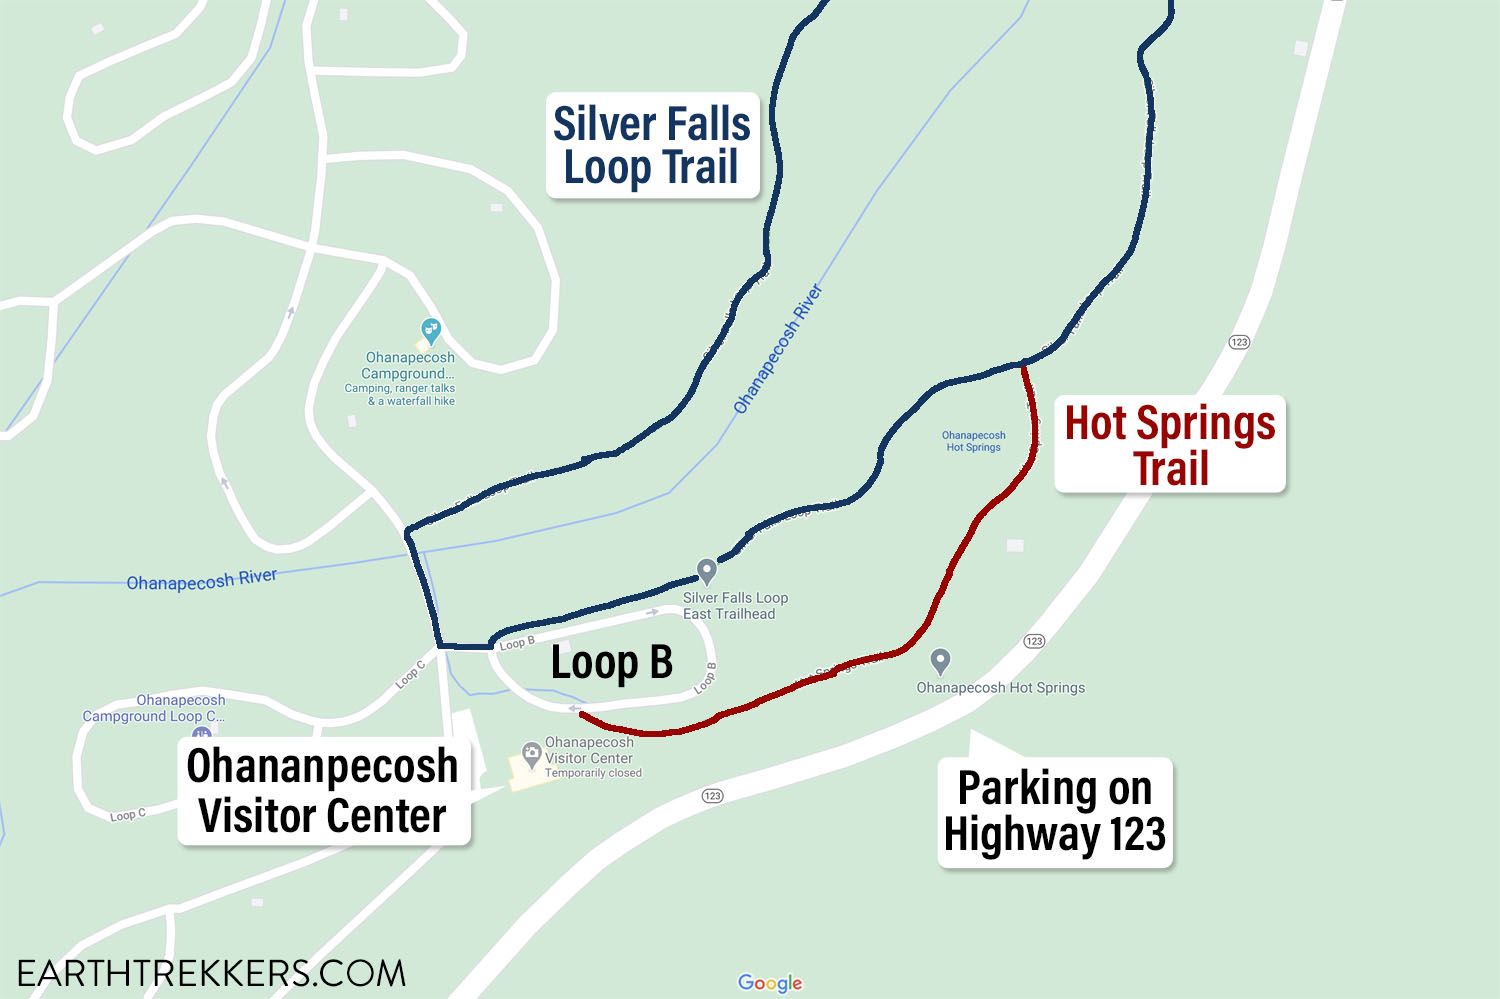 Silver Falls Loop Parking